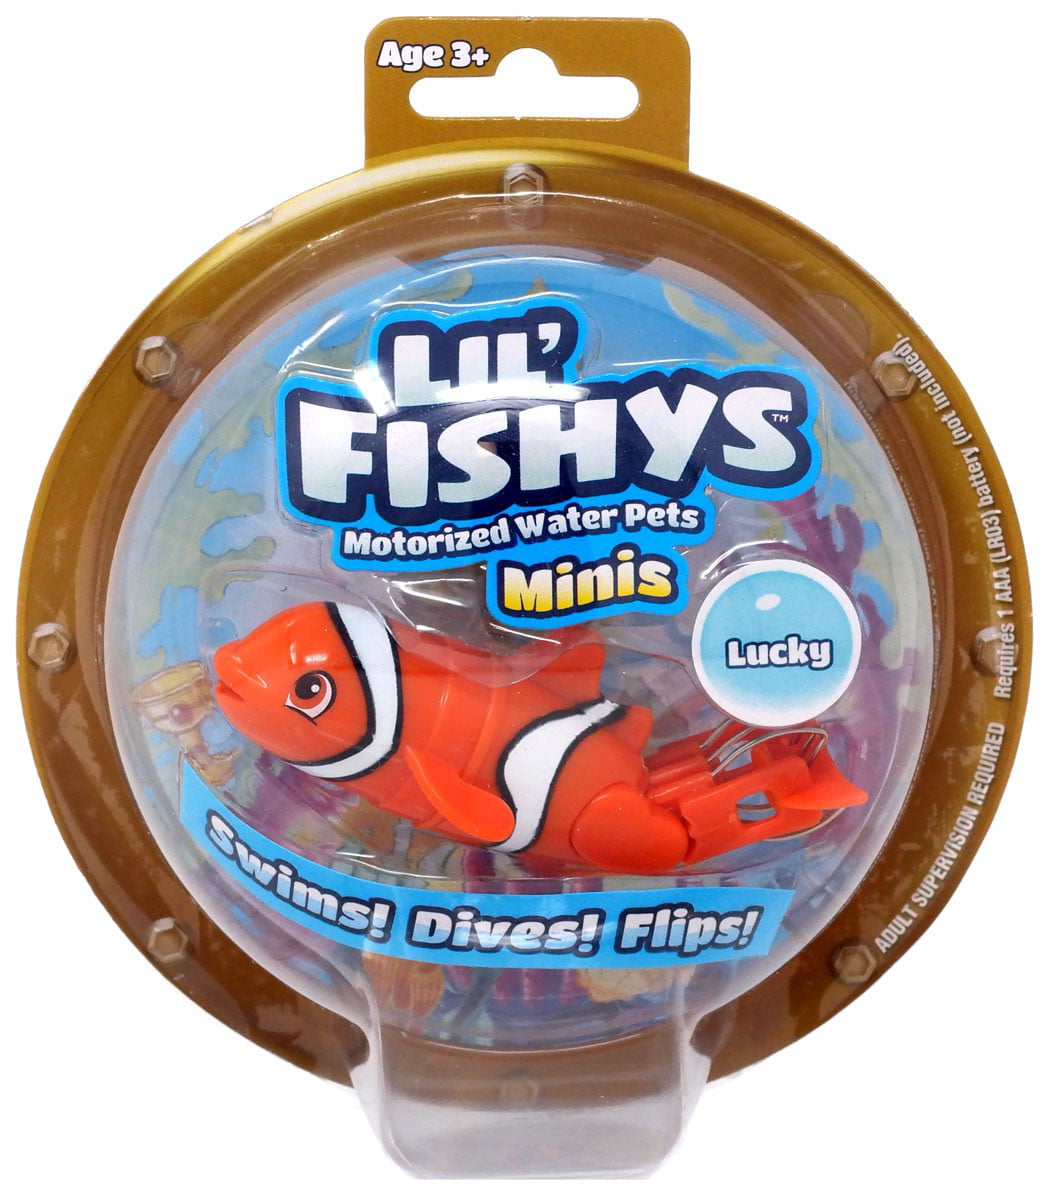 Lil' Fishys Jellys Billy Motorized Water Pet 